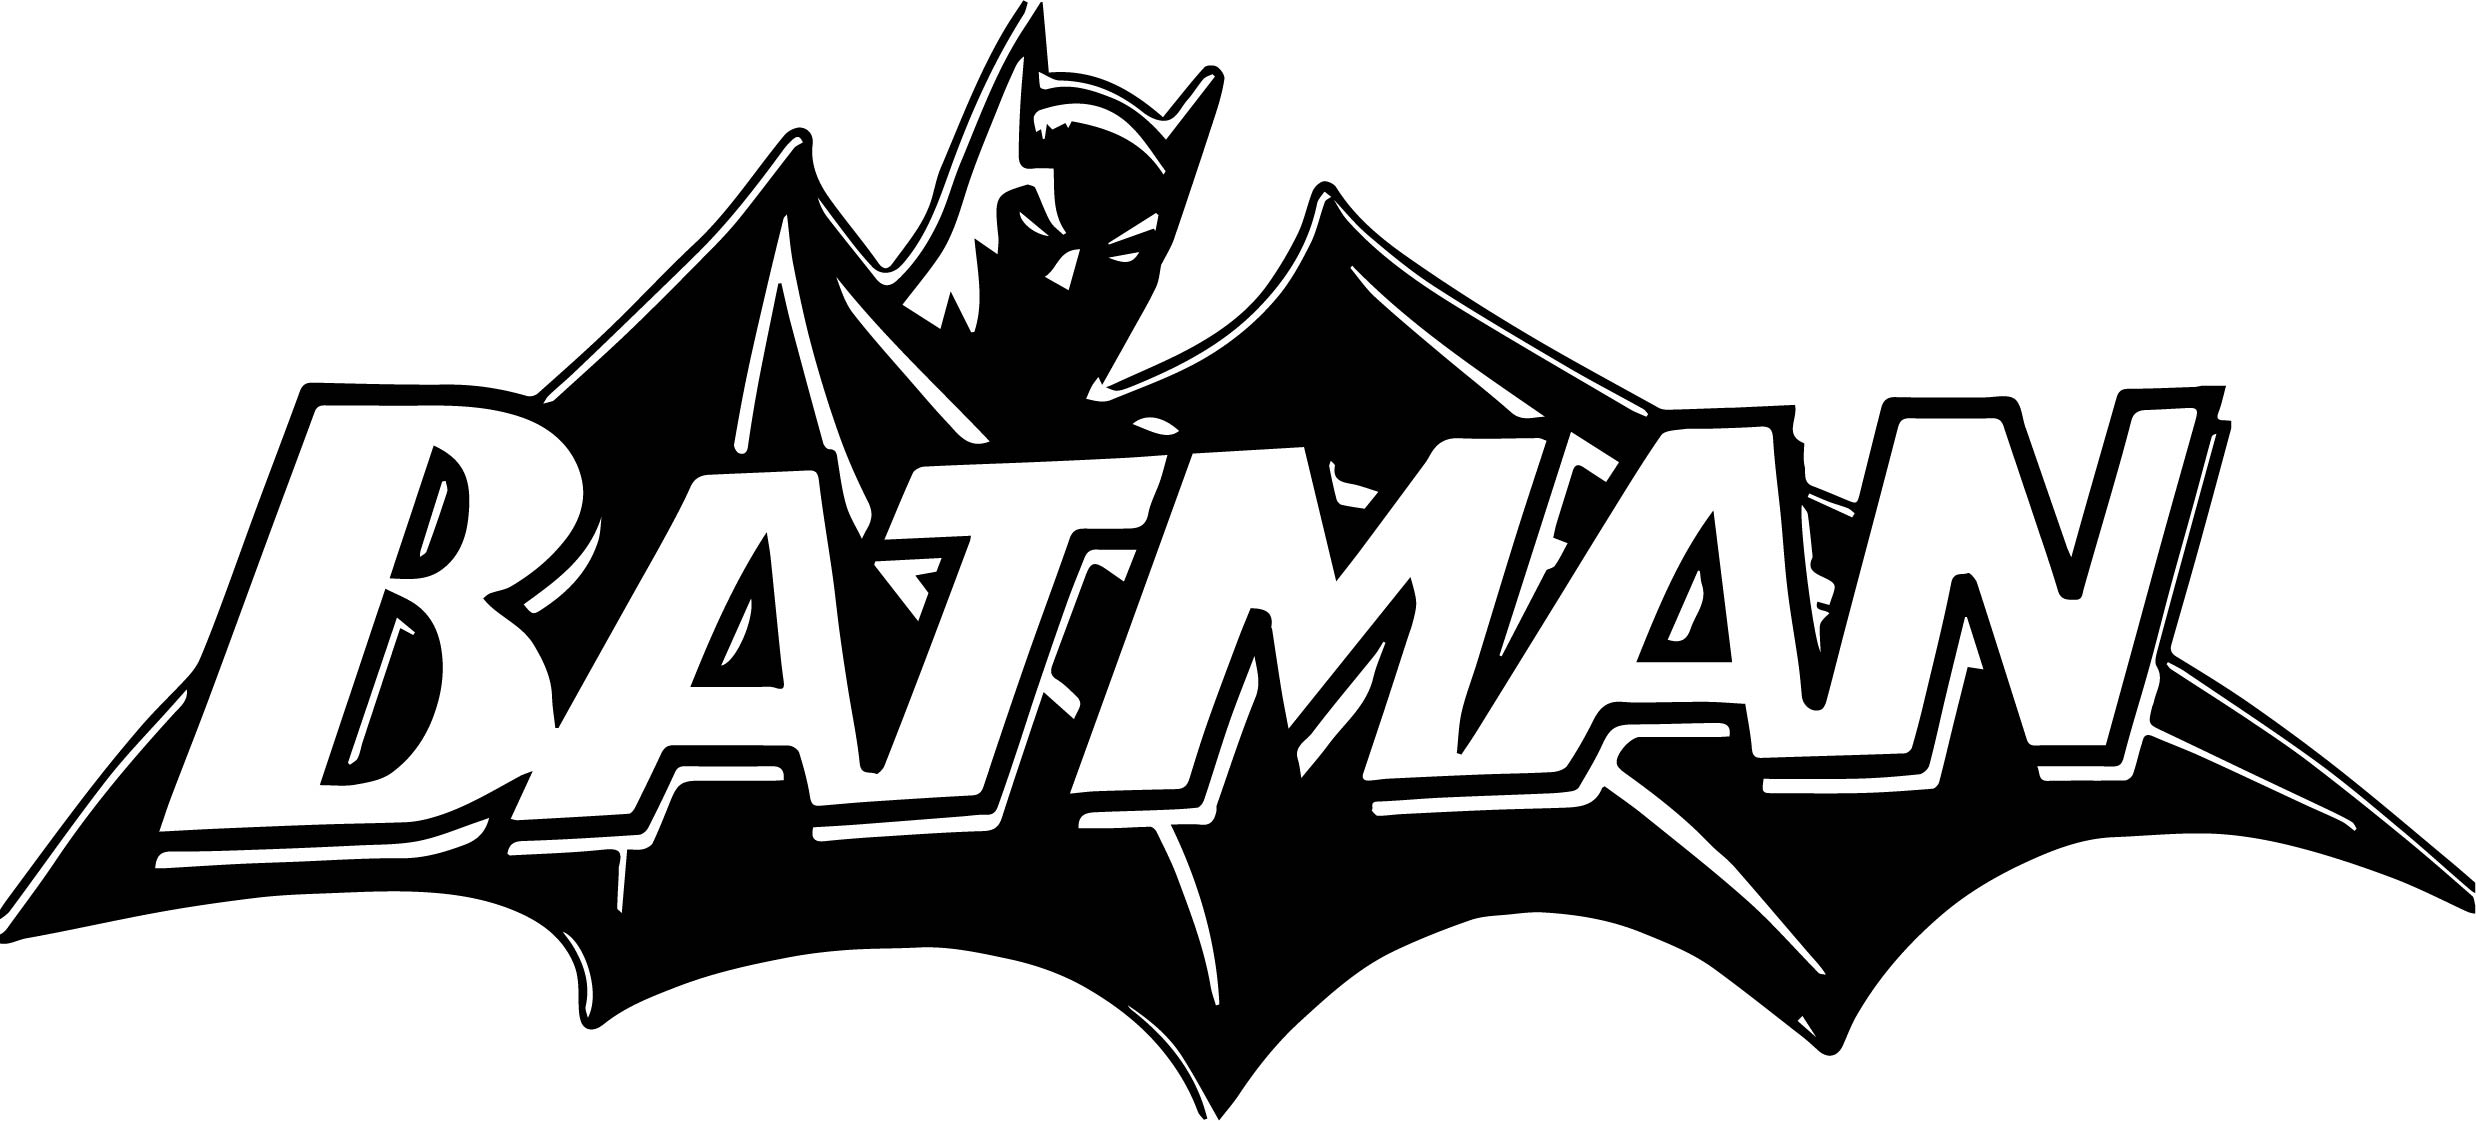 500+ Batman Logo, Wallpapers, HD Images, Vectors Free Download